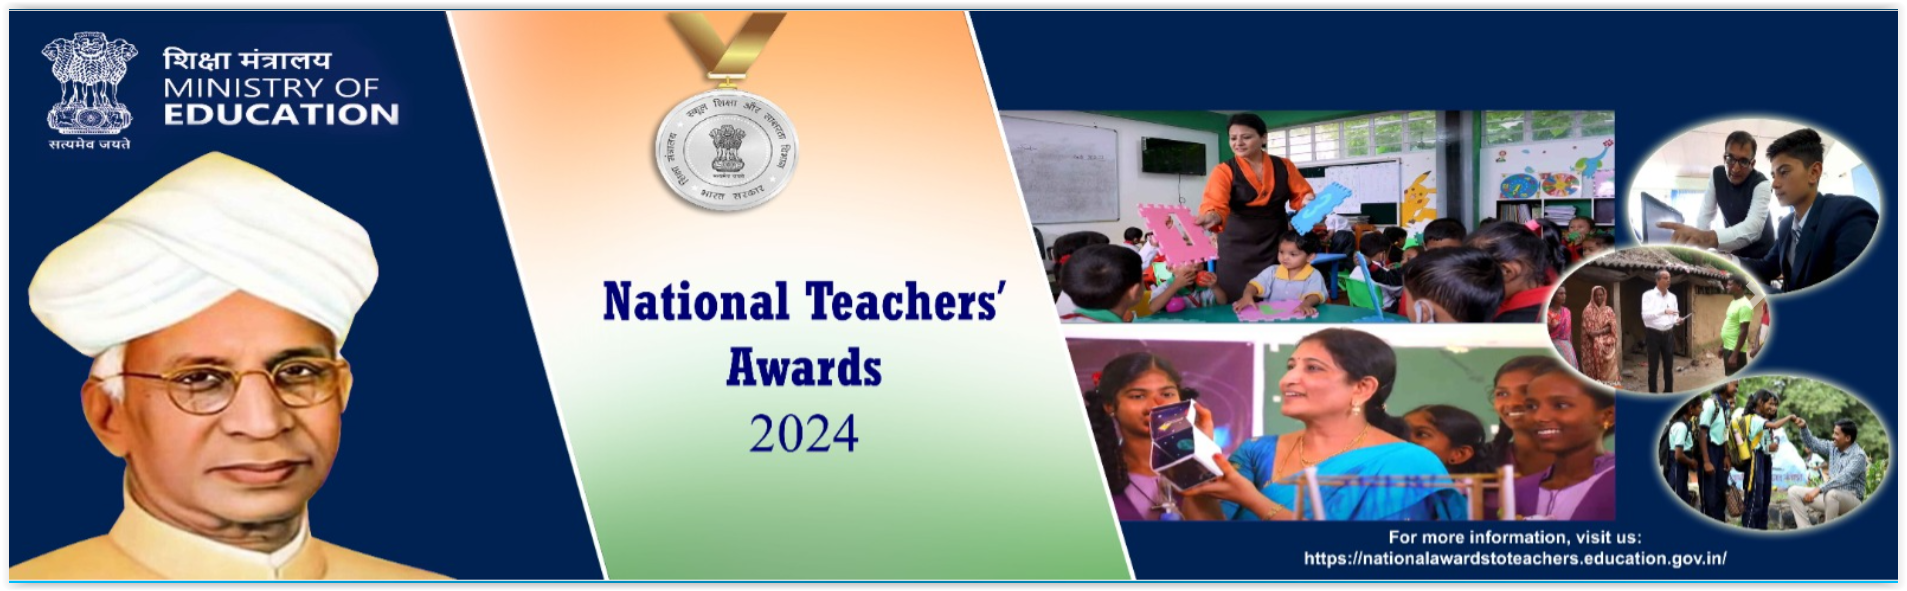 Click to view राष्ट्रीय शिक्षक पुरस्कार 2024